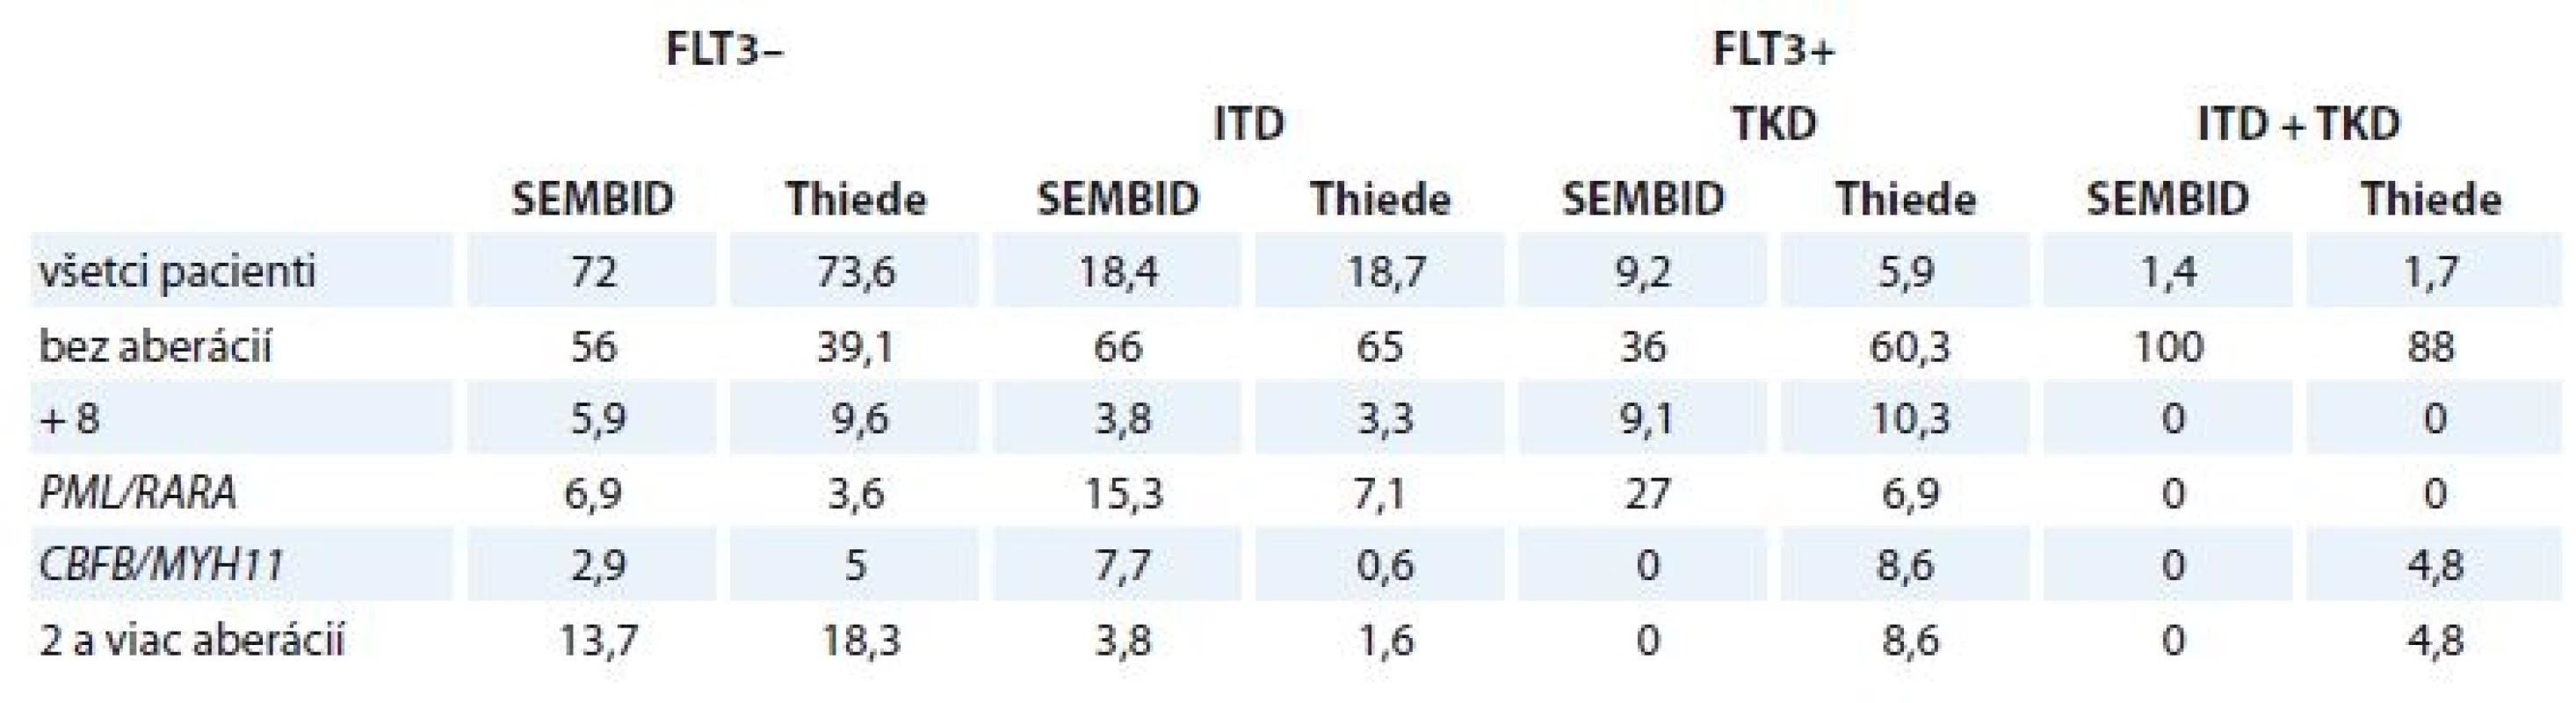 Porovnanie výsledkov monitoringu FLT3 vo vzorkách pacientov s AML <i>de novo</i> analyzovaných v laboratóriu SEMBID a s publikovanou štúdiou (Thiede, 2002). Uvedené hodnoty sú v %.